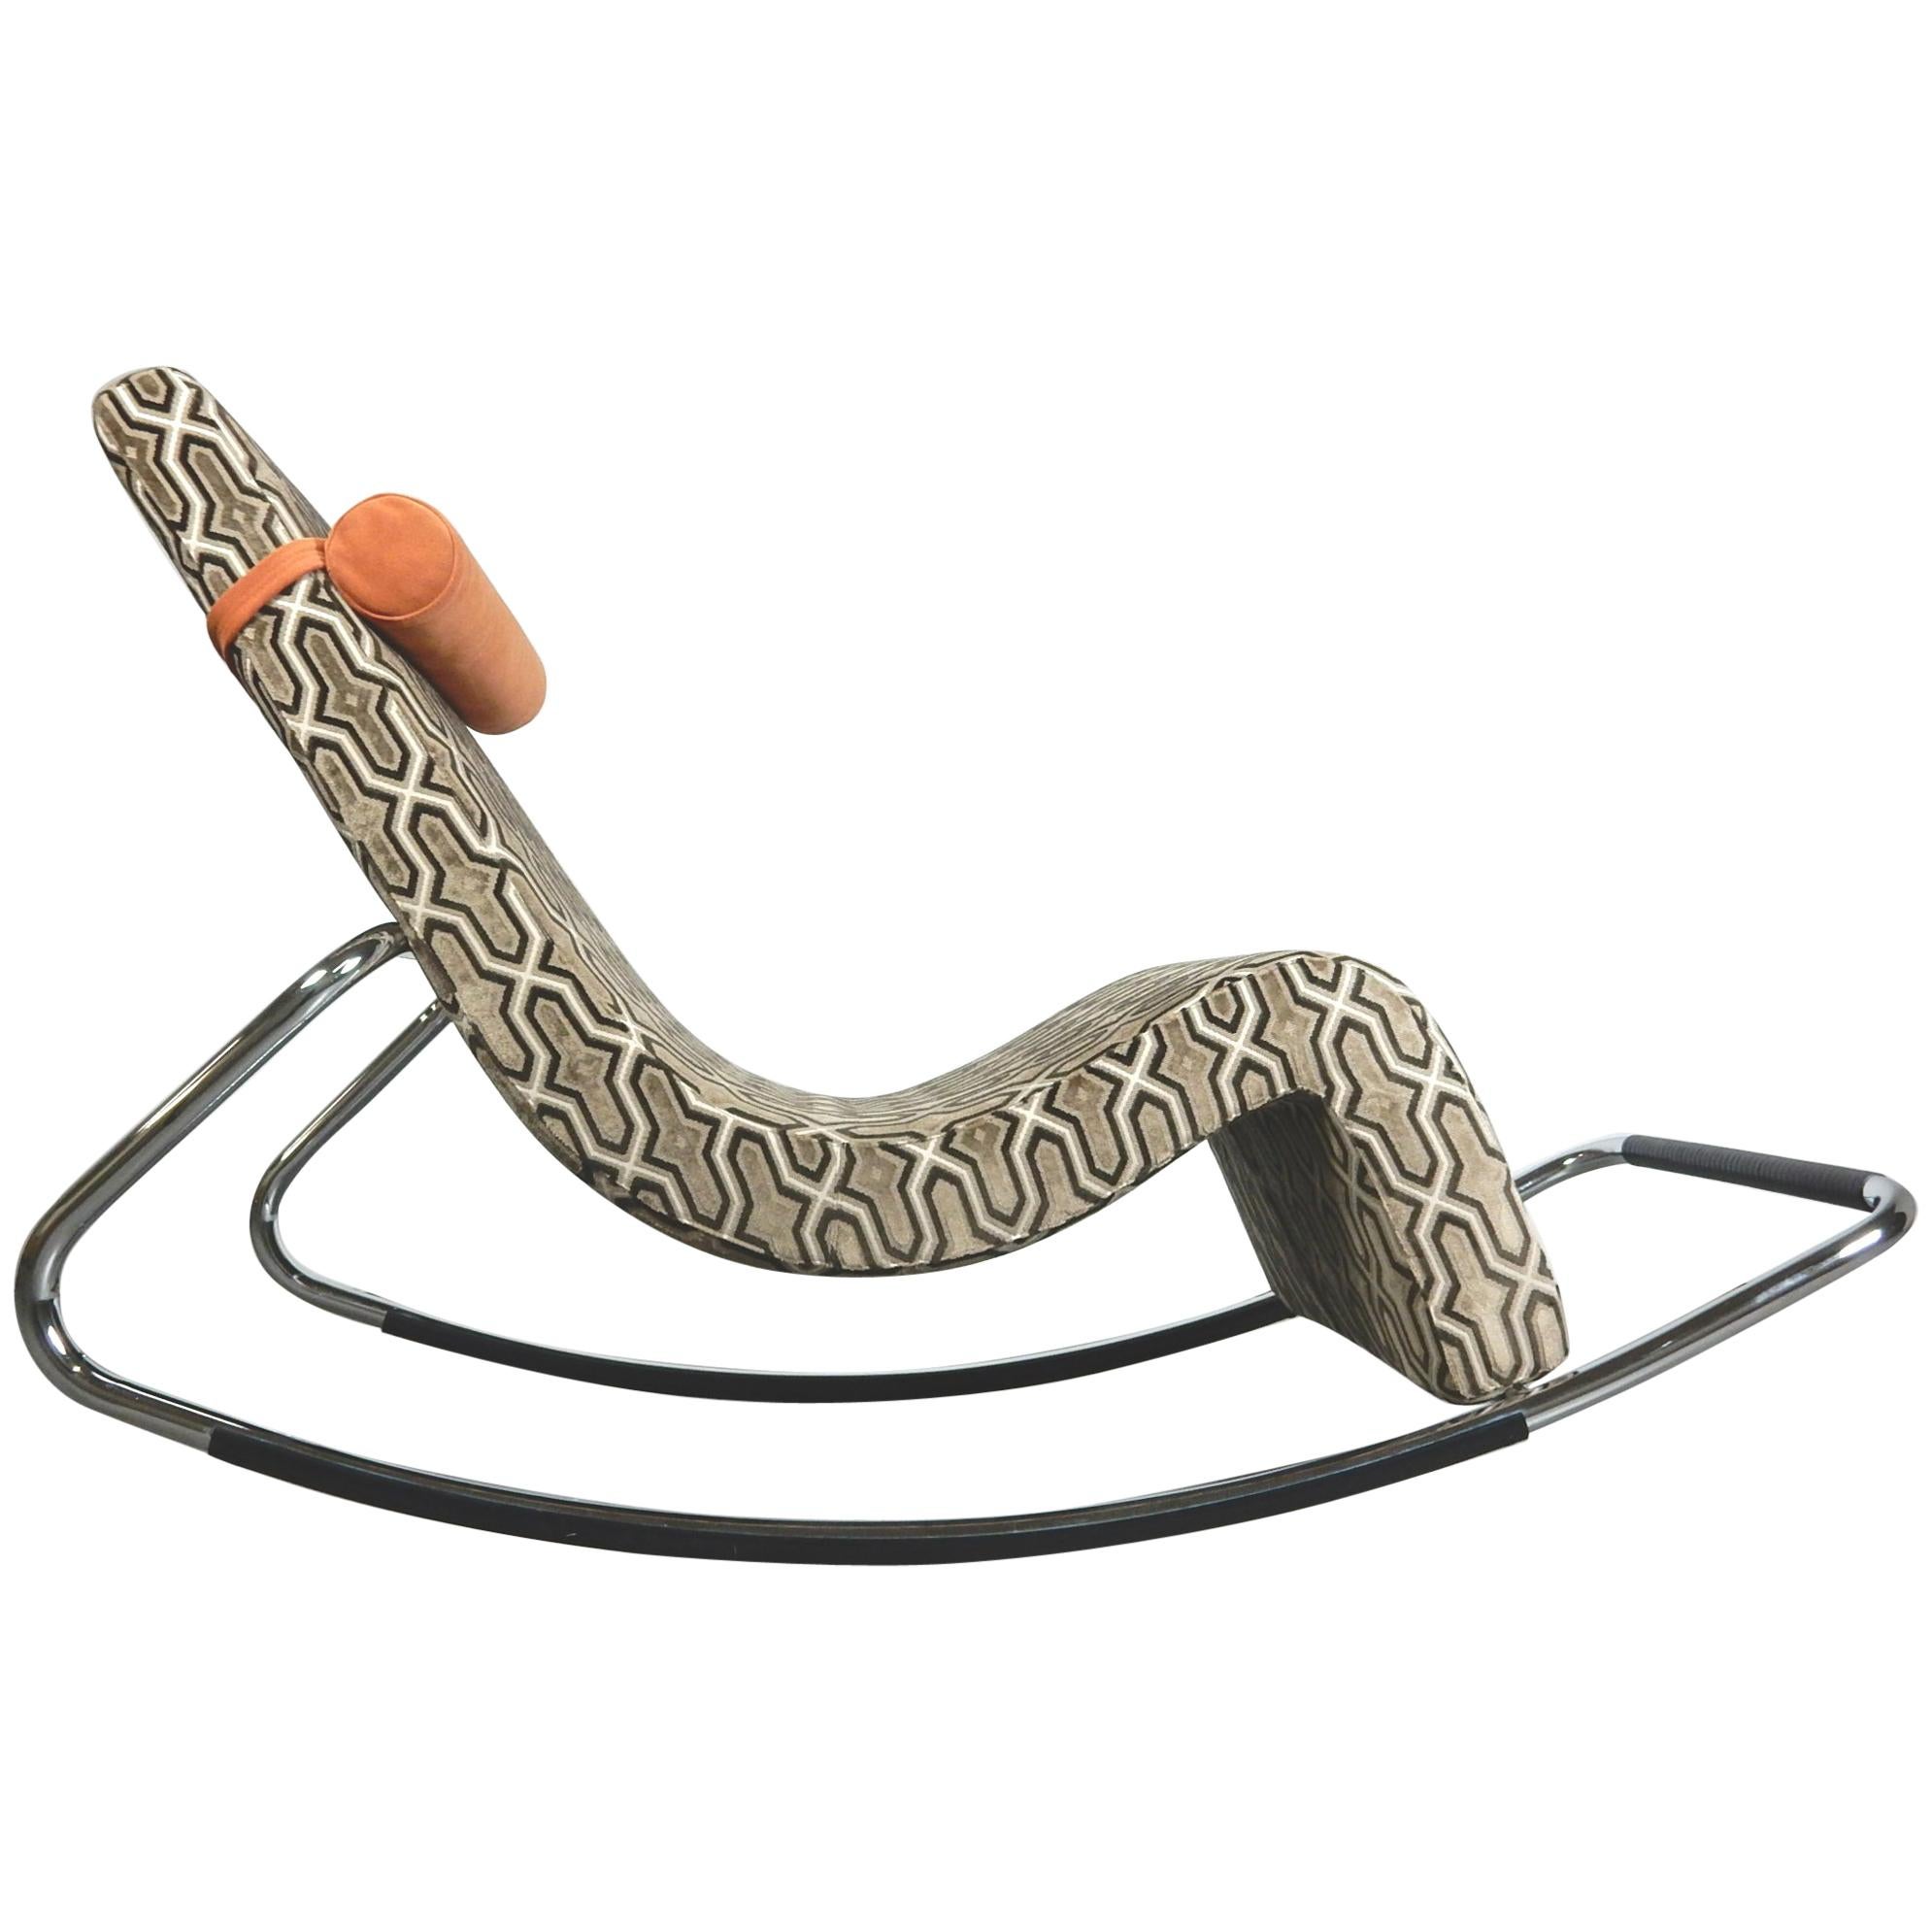 Lounge Chair "Dozy" by Enzo Berti Italian Design Ferlea